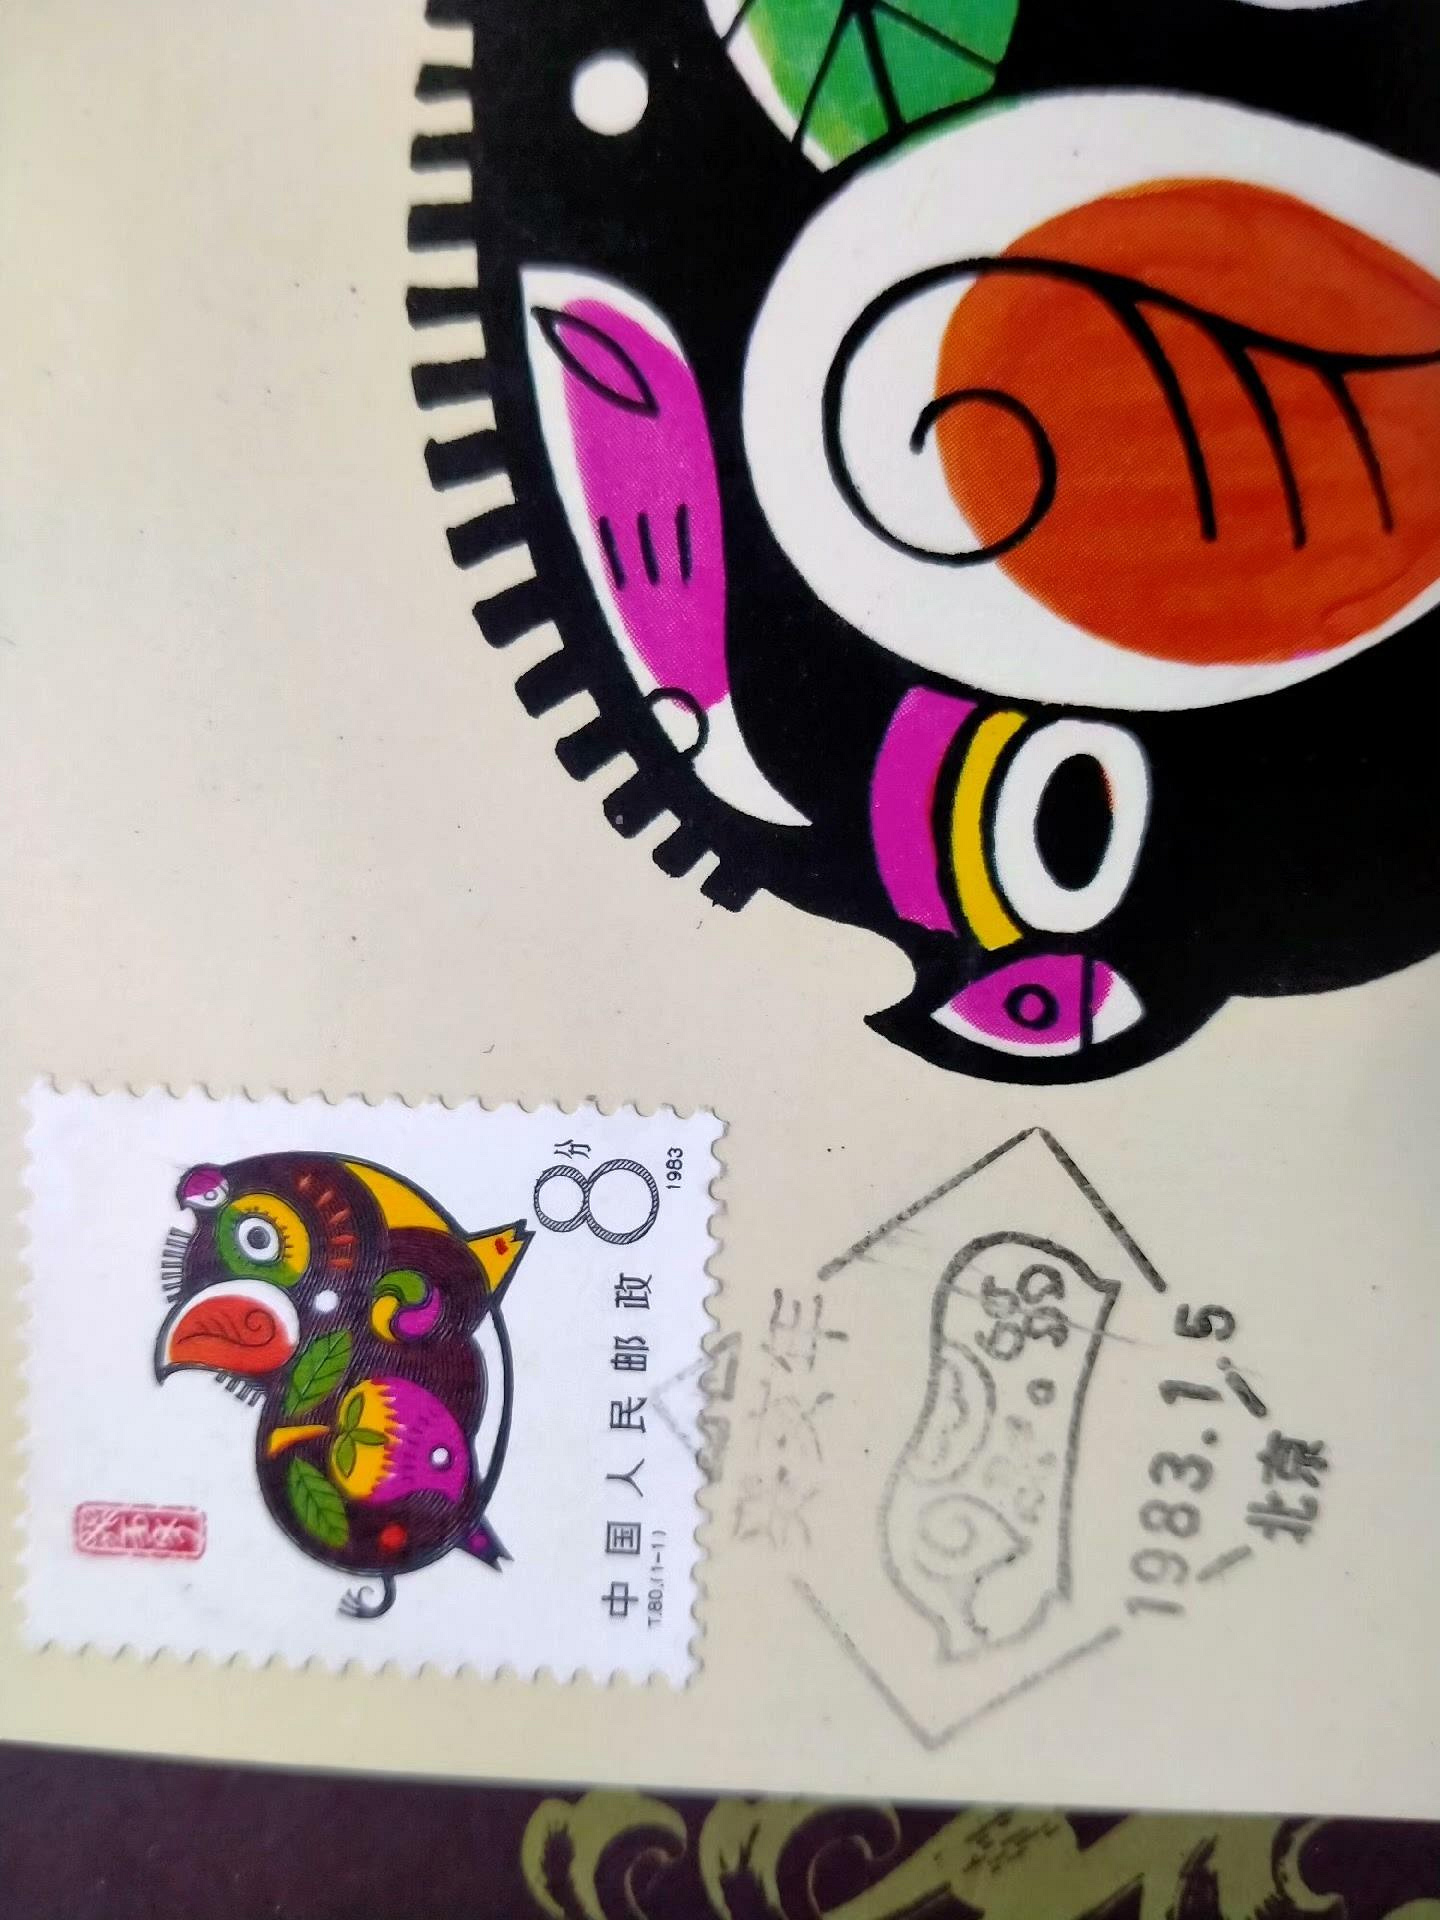 【二手】T輪生肖豬極限片1枚。80年代明信片。 具體詳聊 郵票 錢幣 收藏幣 【伯樂郵票錢幣】-1218